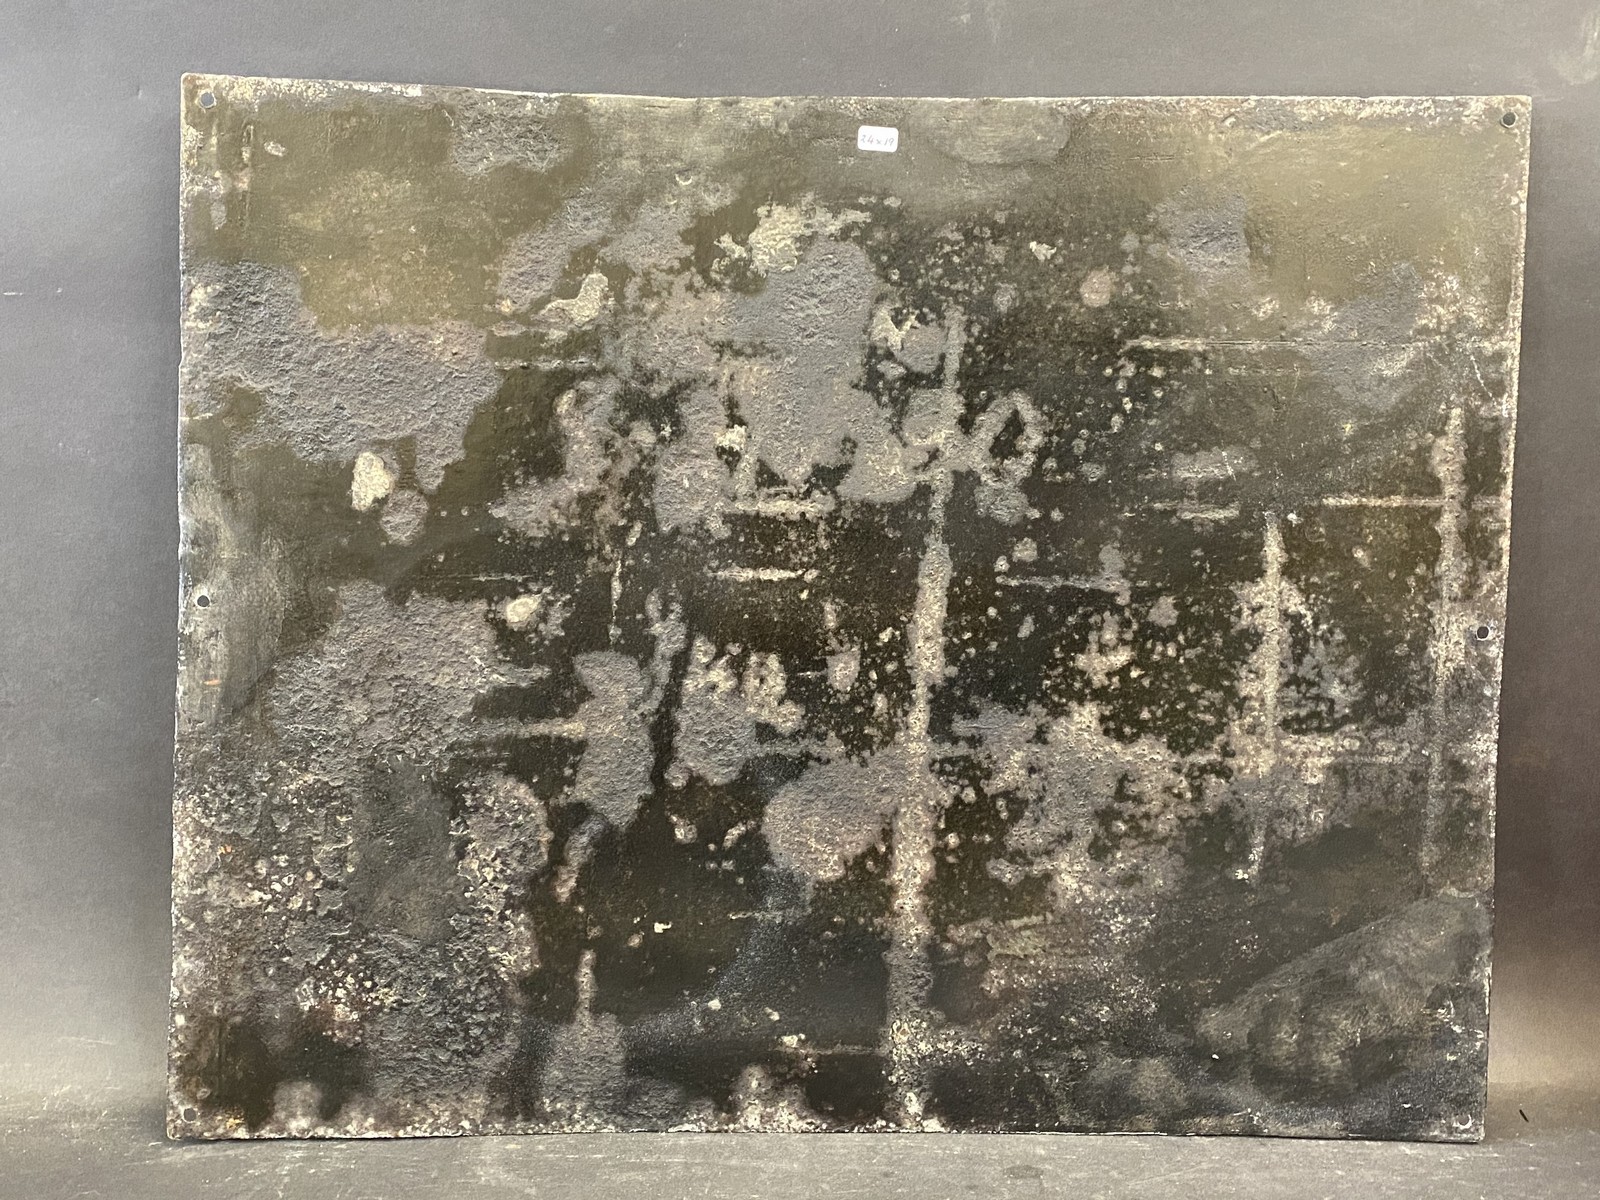 A Gargoyle Mobiloil rectangular enamel sign, restored, 24 x 19". - Image 3 of 3